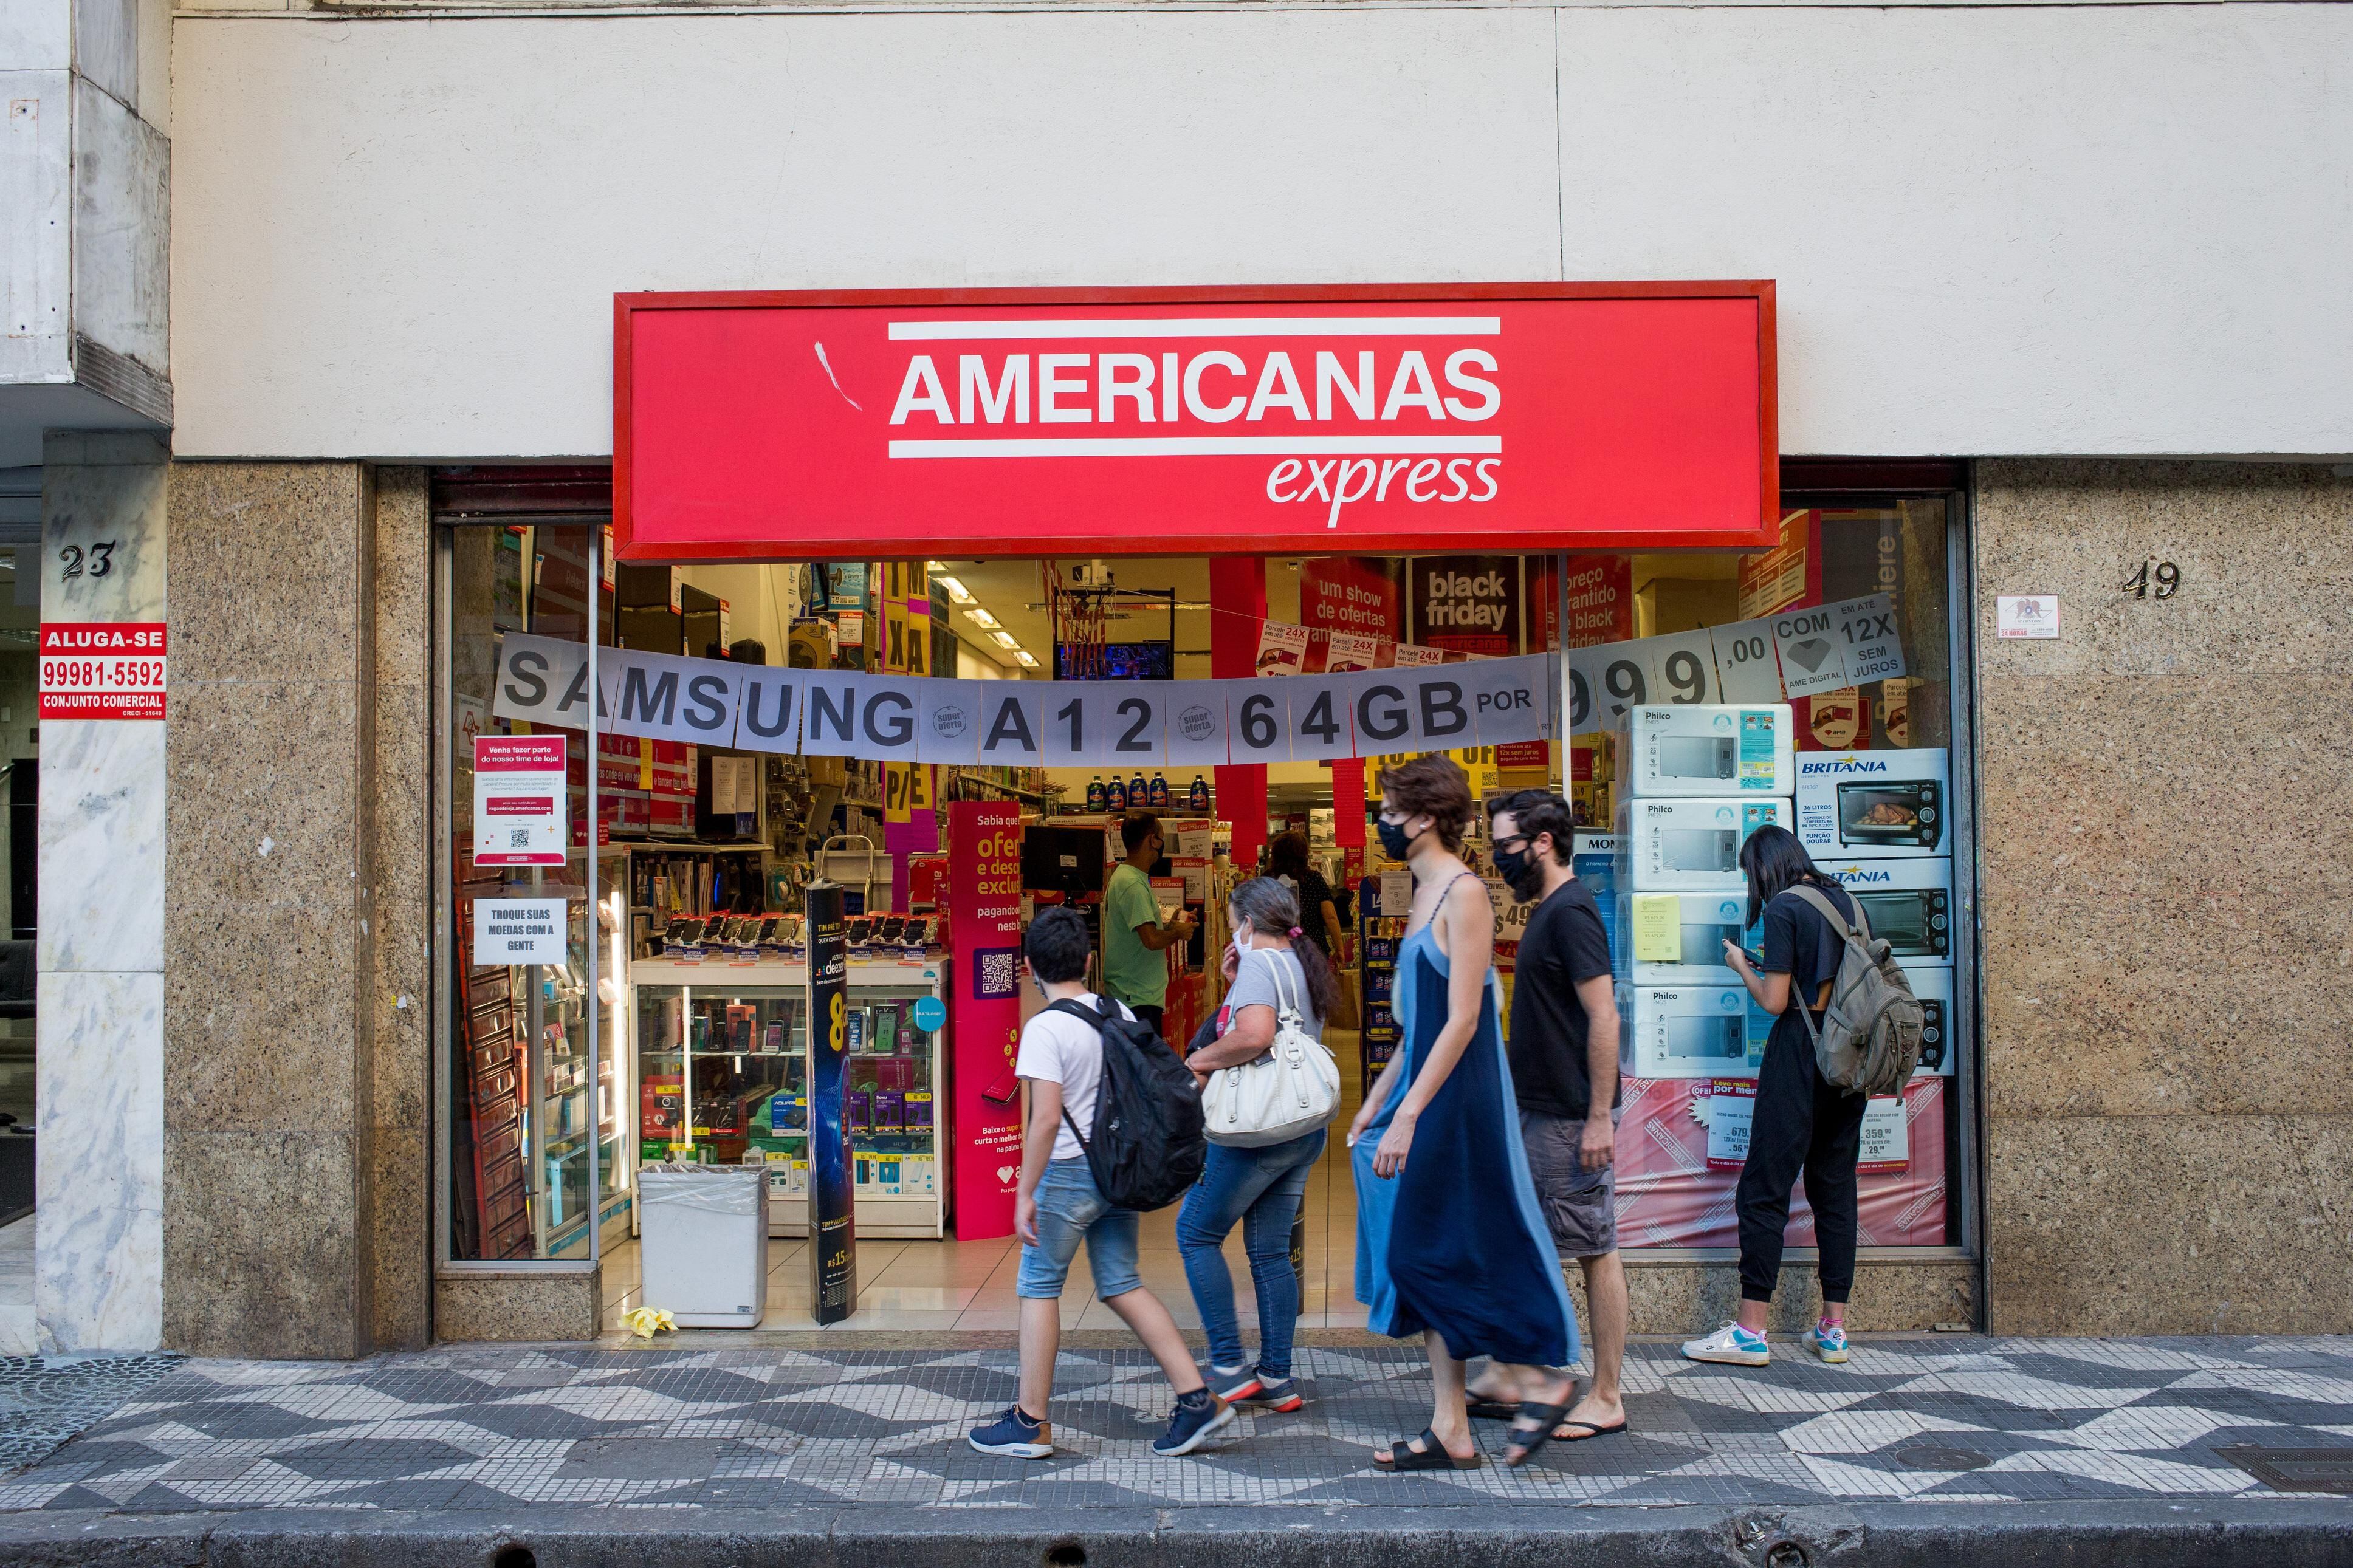 Americanas demite 7 funcionários de unidades ainda ativas na Capital -  Economia - Campo Grande News